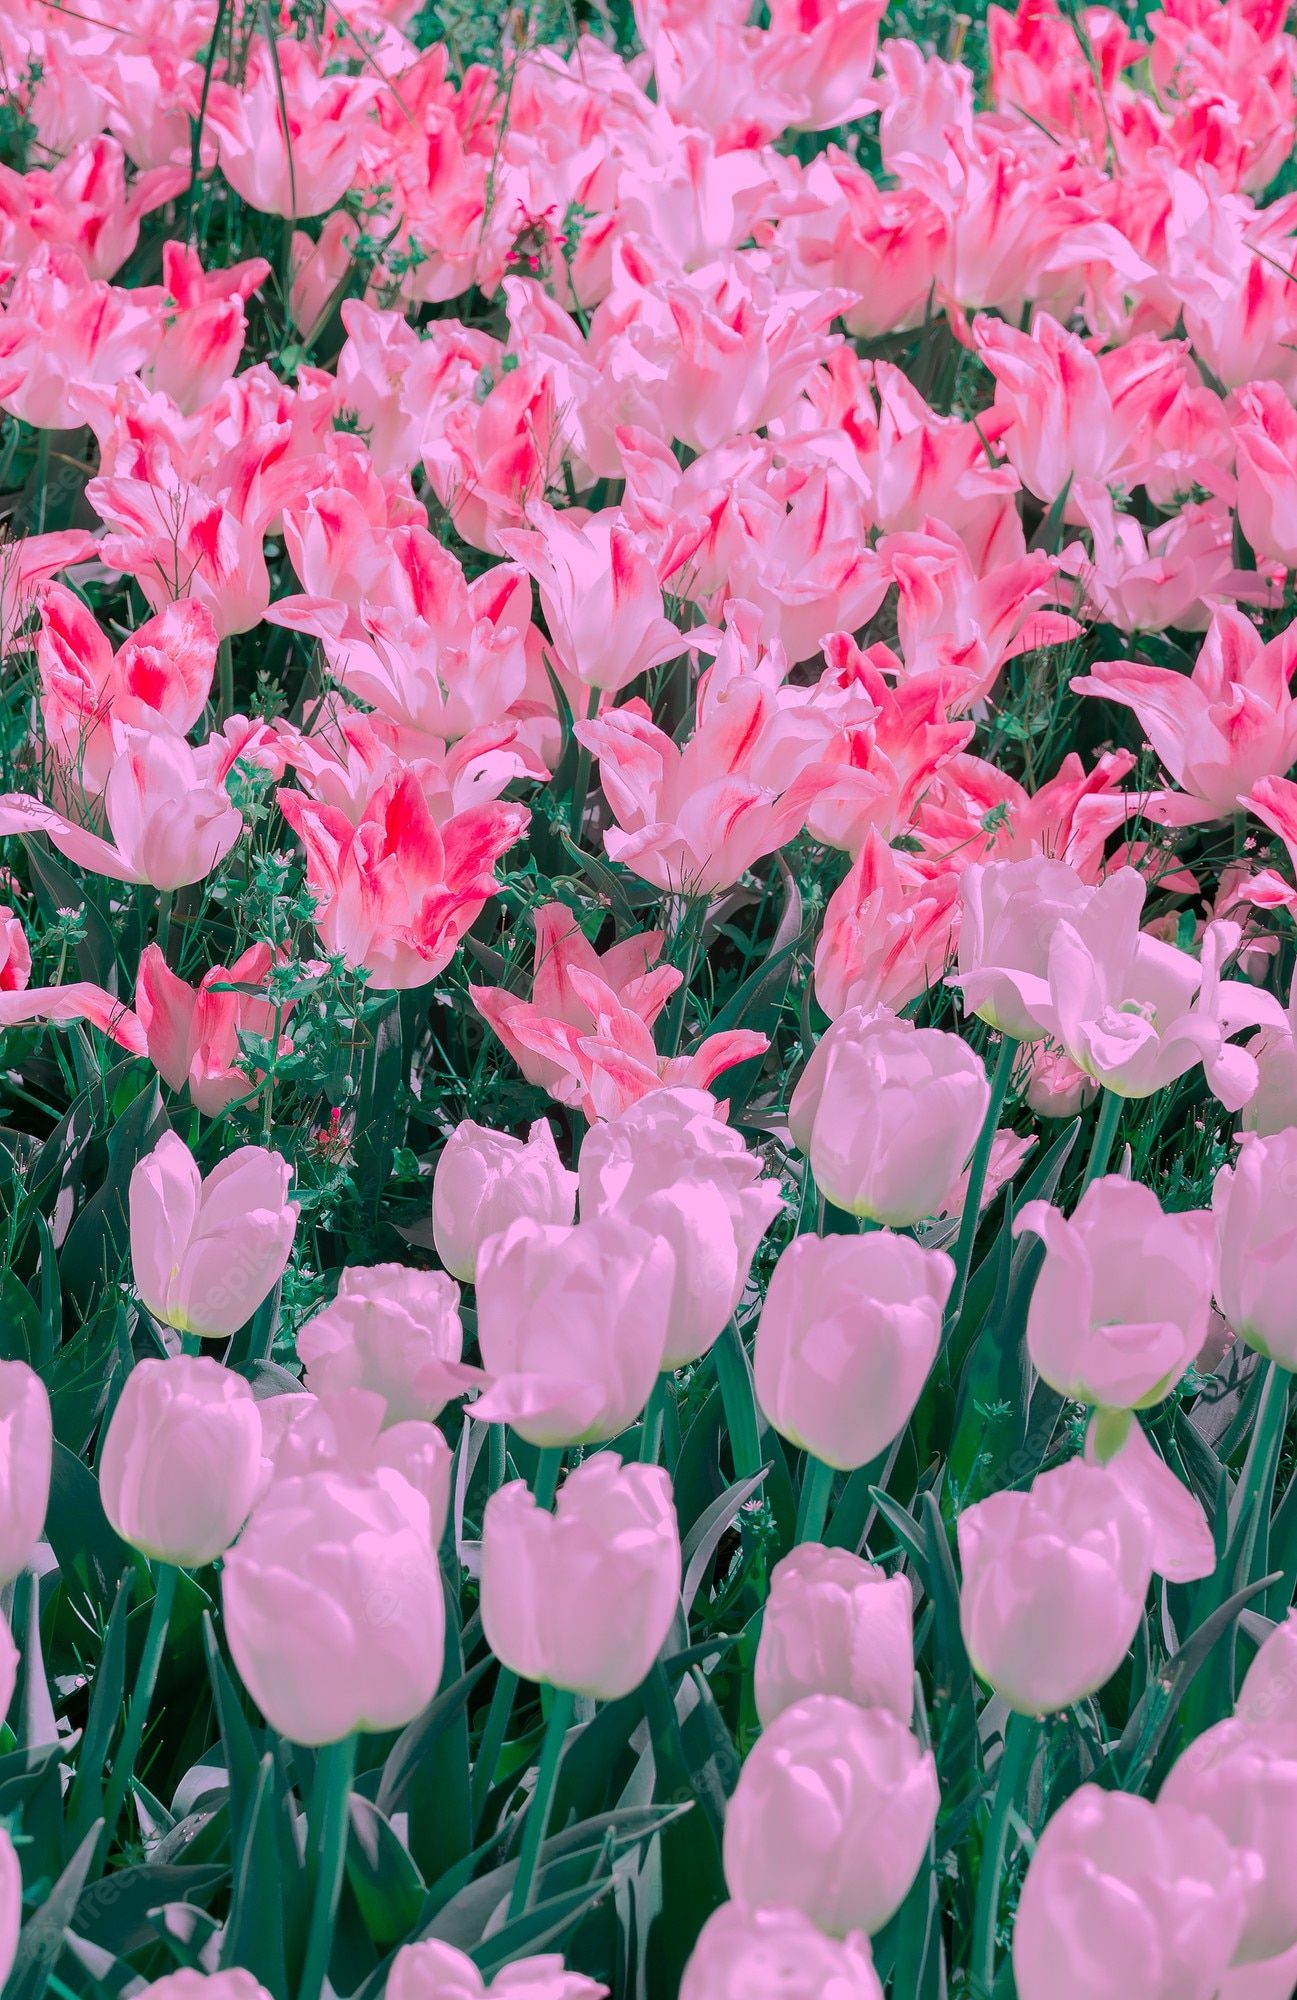  Frühlingslandschaften Hintergrundbild 1297x2000. Mode ästhetik tapete blumen. rosa und weißer tulpenhintergrund